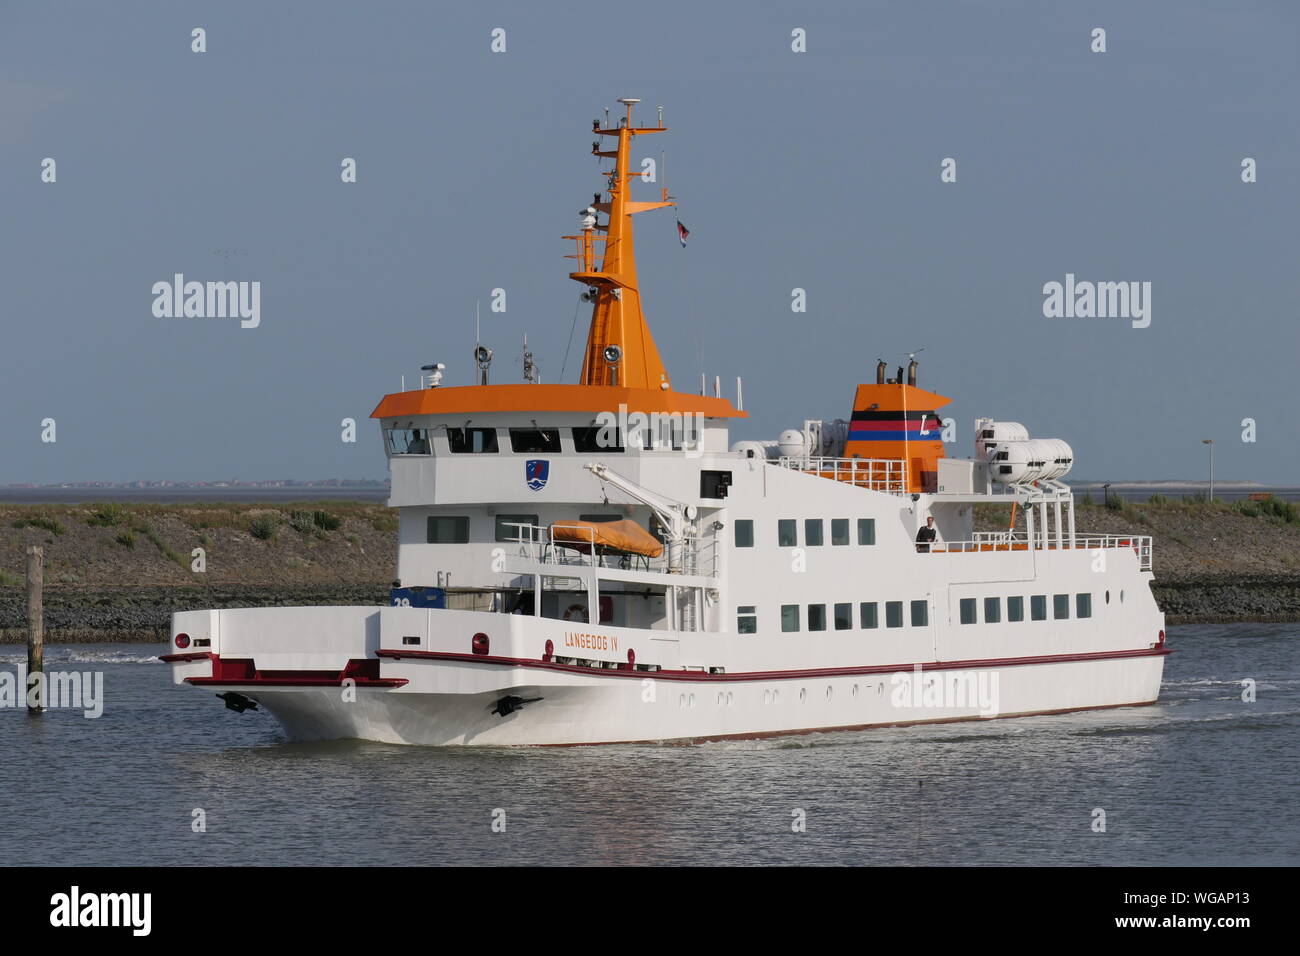 La nave passeggeri Langeoog IV lascia il porto di Bensersiel il 24 giugno 2019. Foto Stock